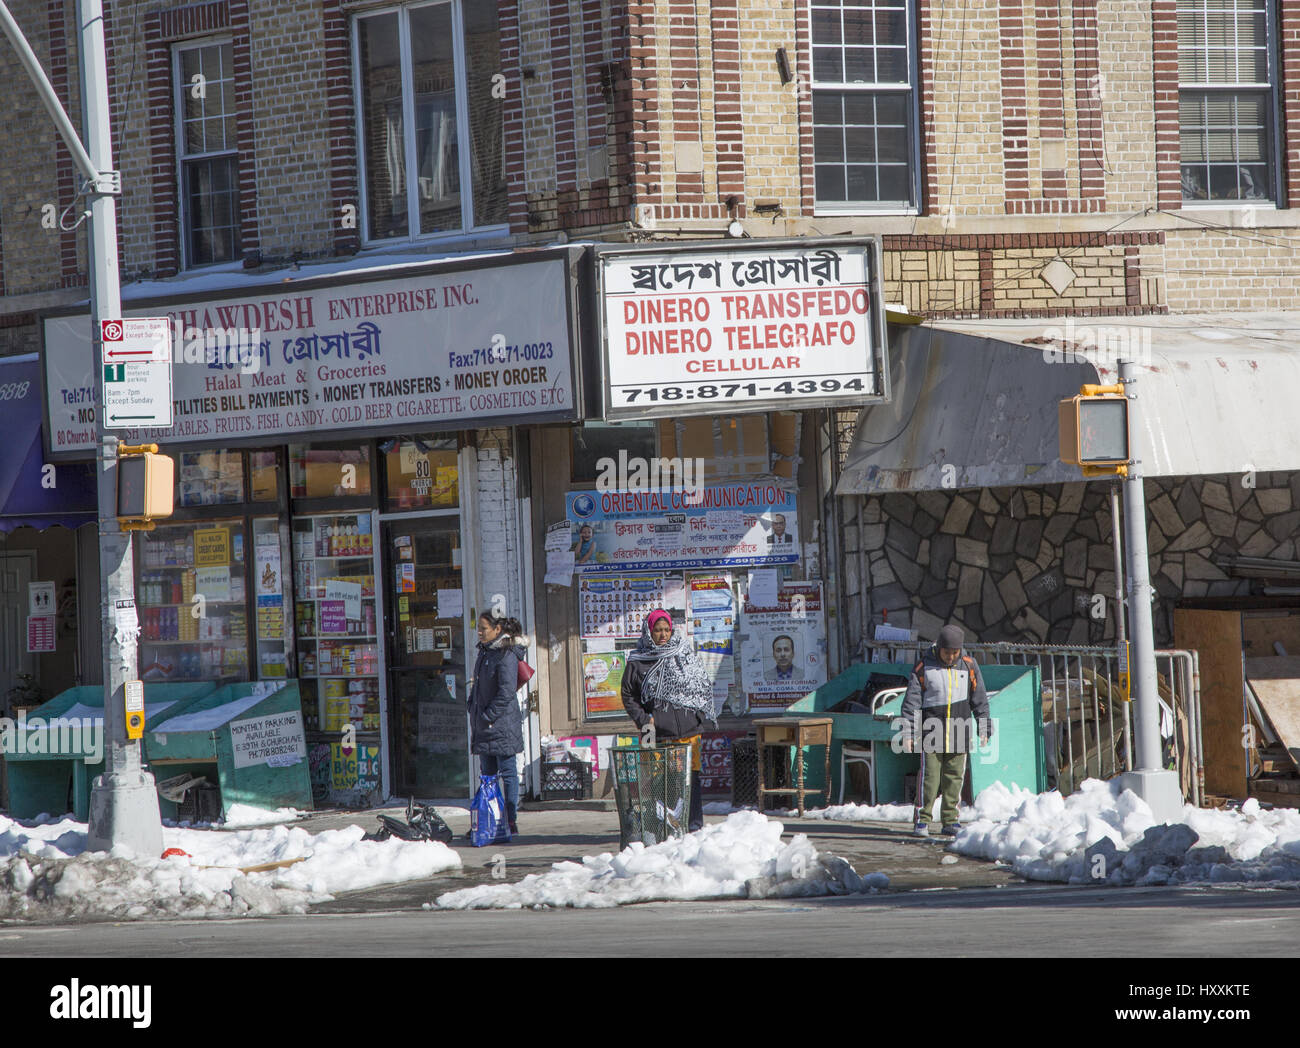 Giros y transferencias de dinero ofrecido en una tienda local en un barrio multiétnico en Brooklyn, NY. Foto de stock